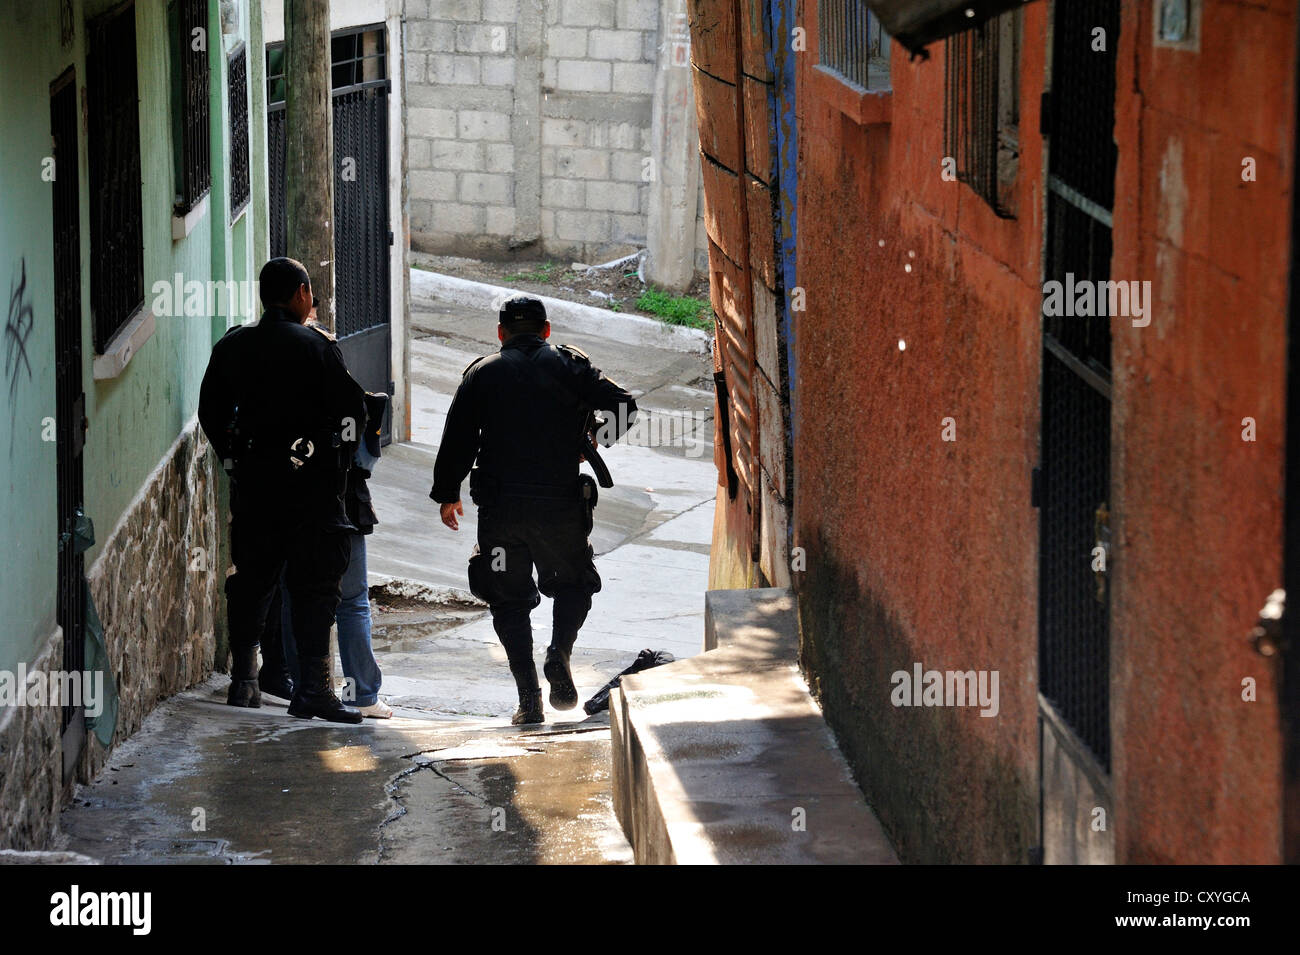 Unités de police lourdement armés patrouillant dans le quartier pauvre d'El Esfuerzo, le district est contrôlé par des gangs rivaux Banque D'Images